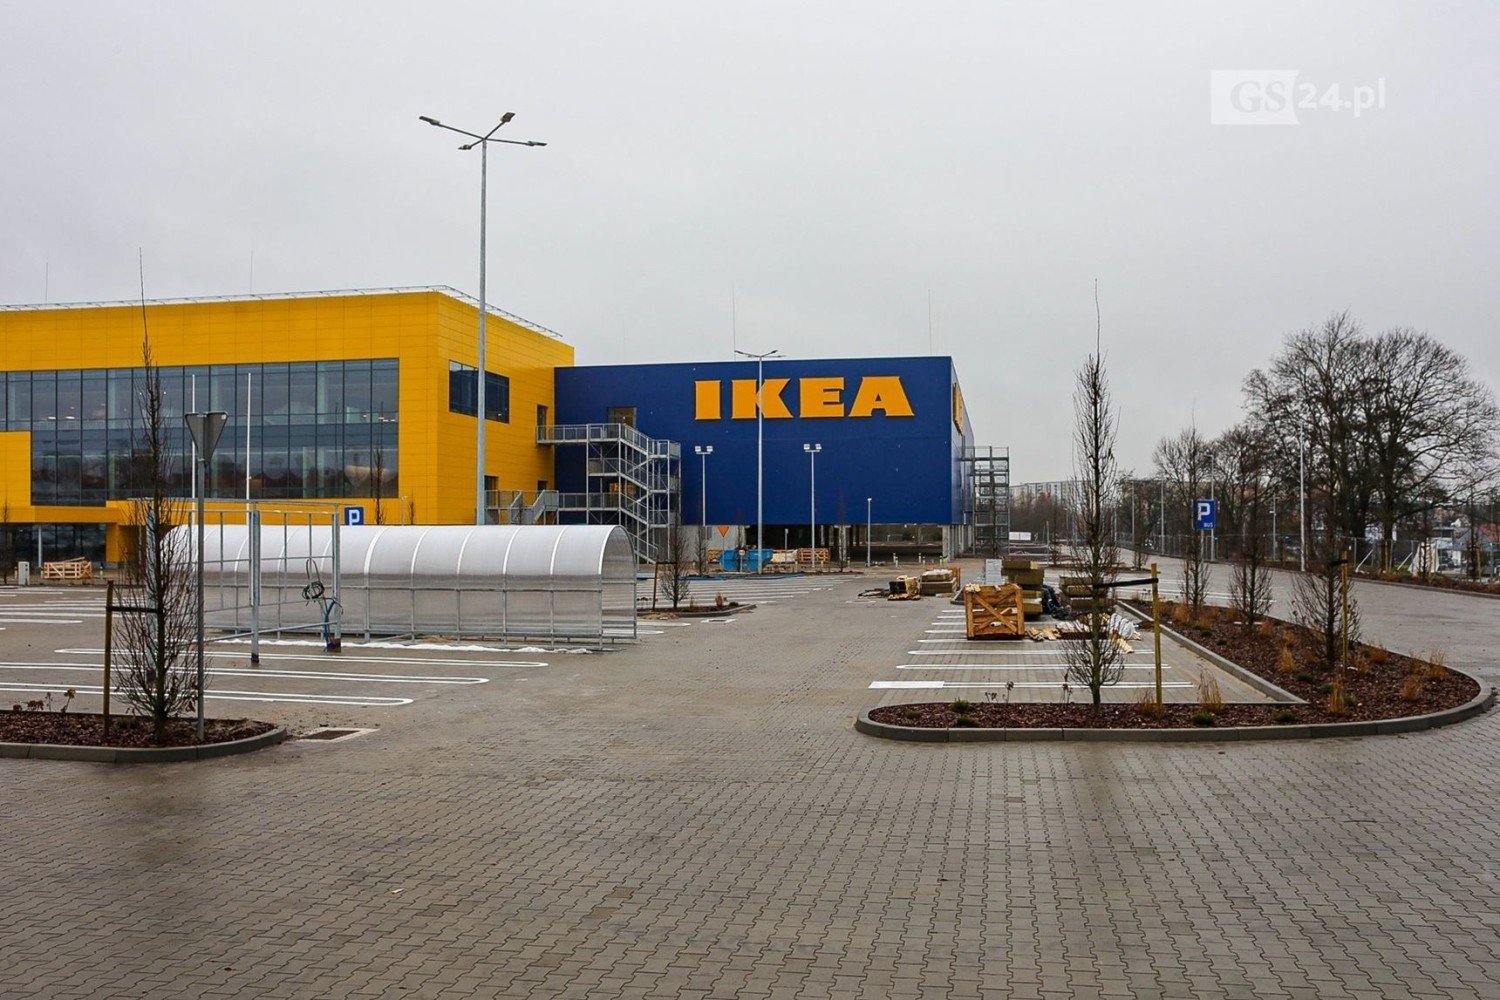 Ikea W Szczecinie Kiedy Planowane Otwarcie Pierwsze Nieoficjalne Informacje Zdjecia Wideo Szczecin Nasze Miasto